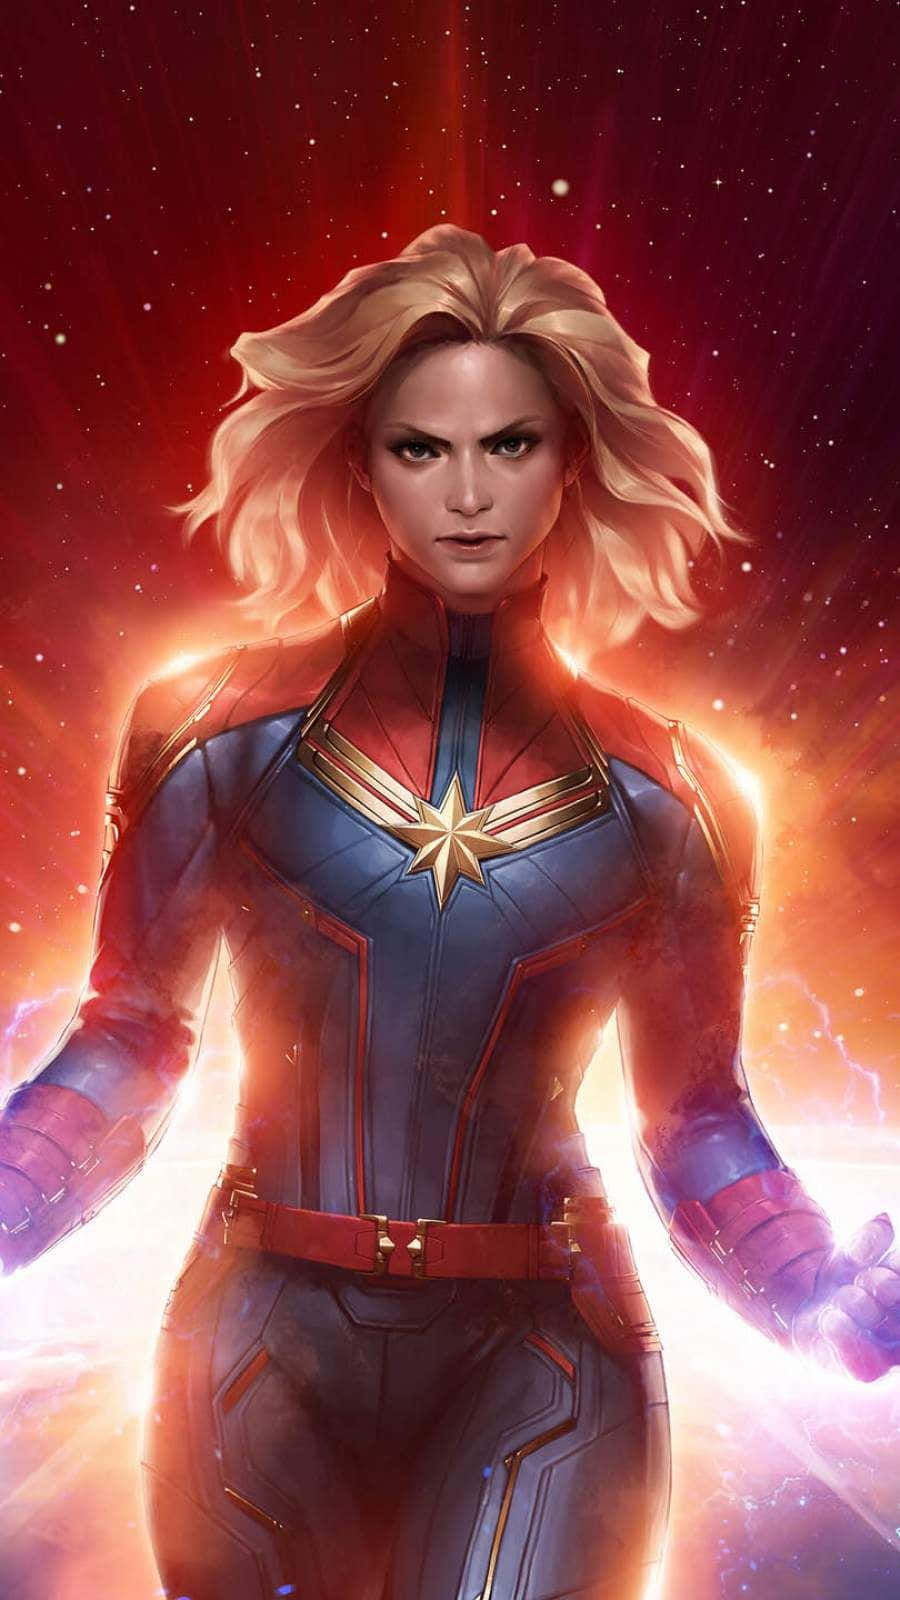 Bildvon Brie Larson In Ihrer Ikonischen Rolle Als Captain Marvel Wallpaper